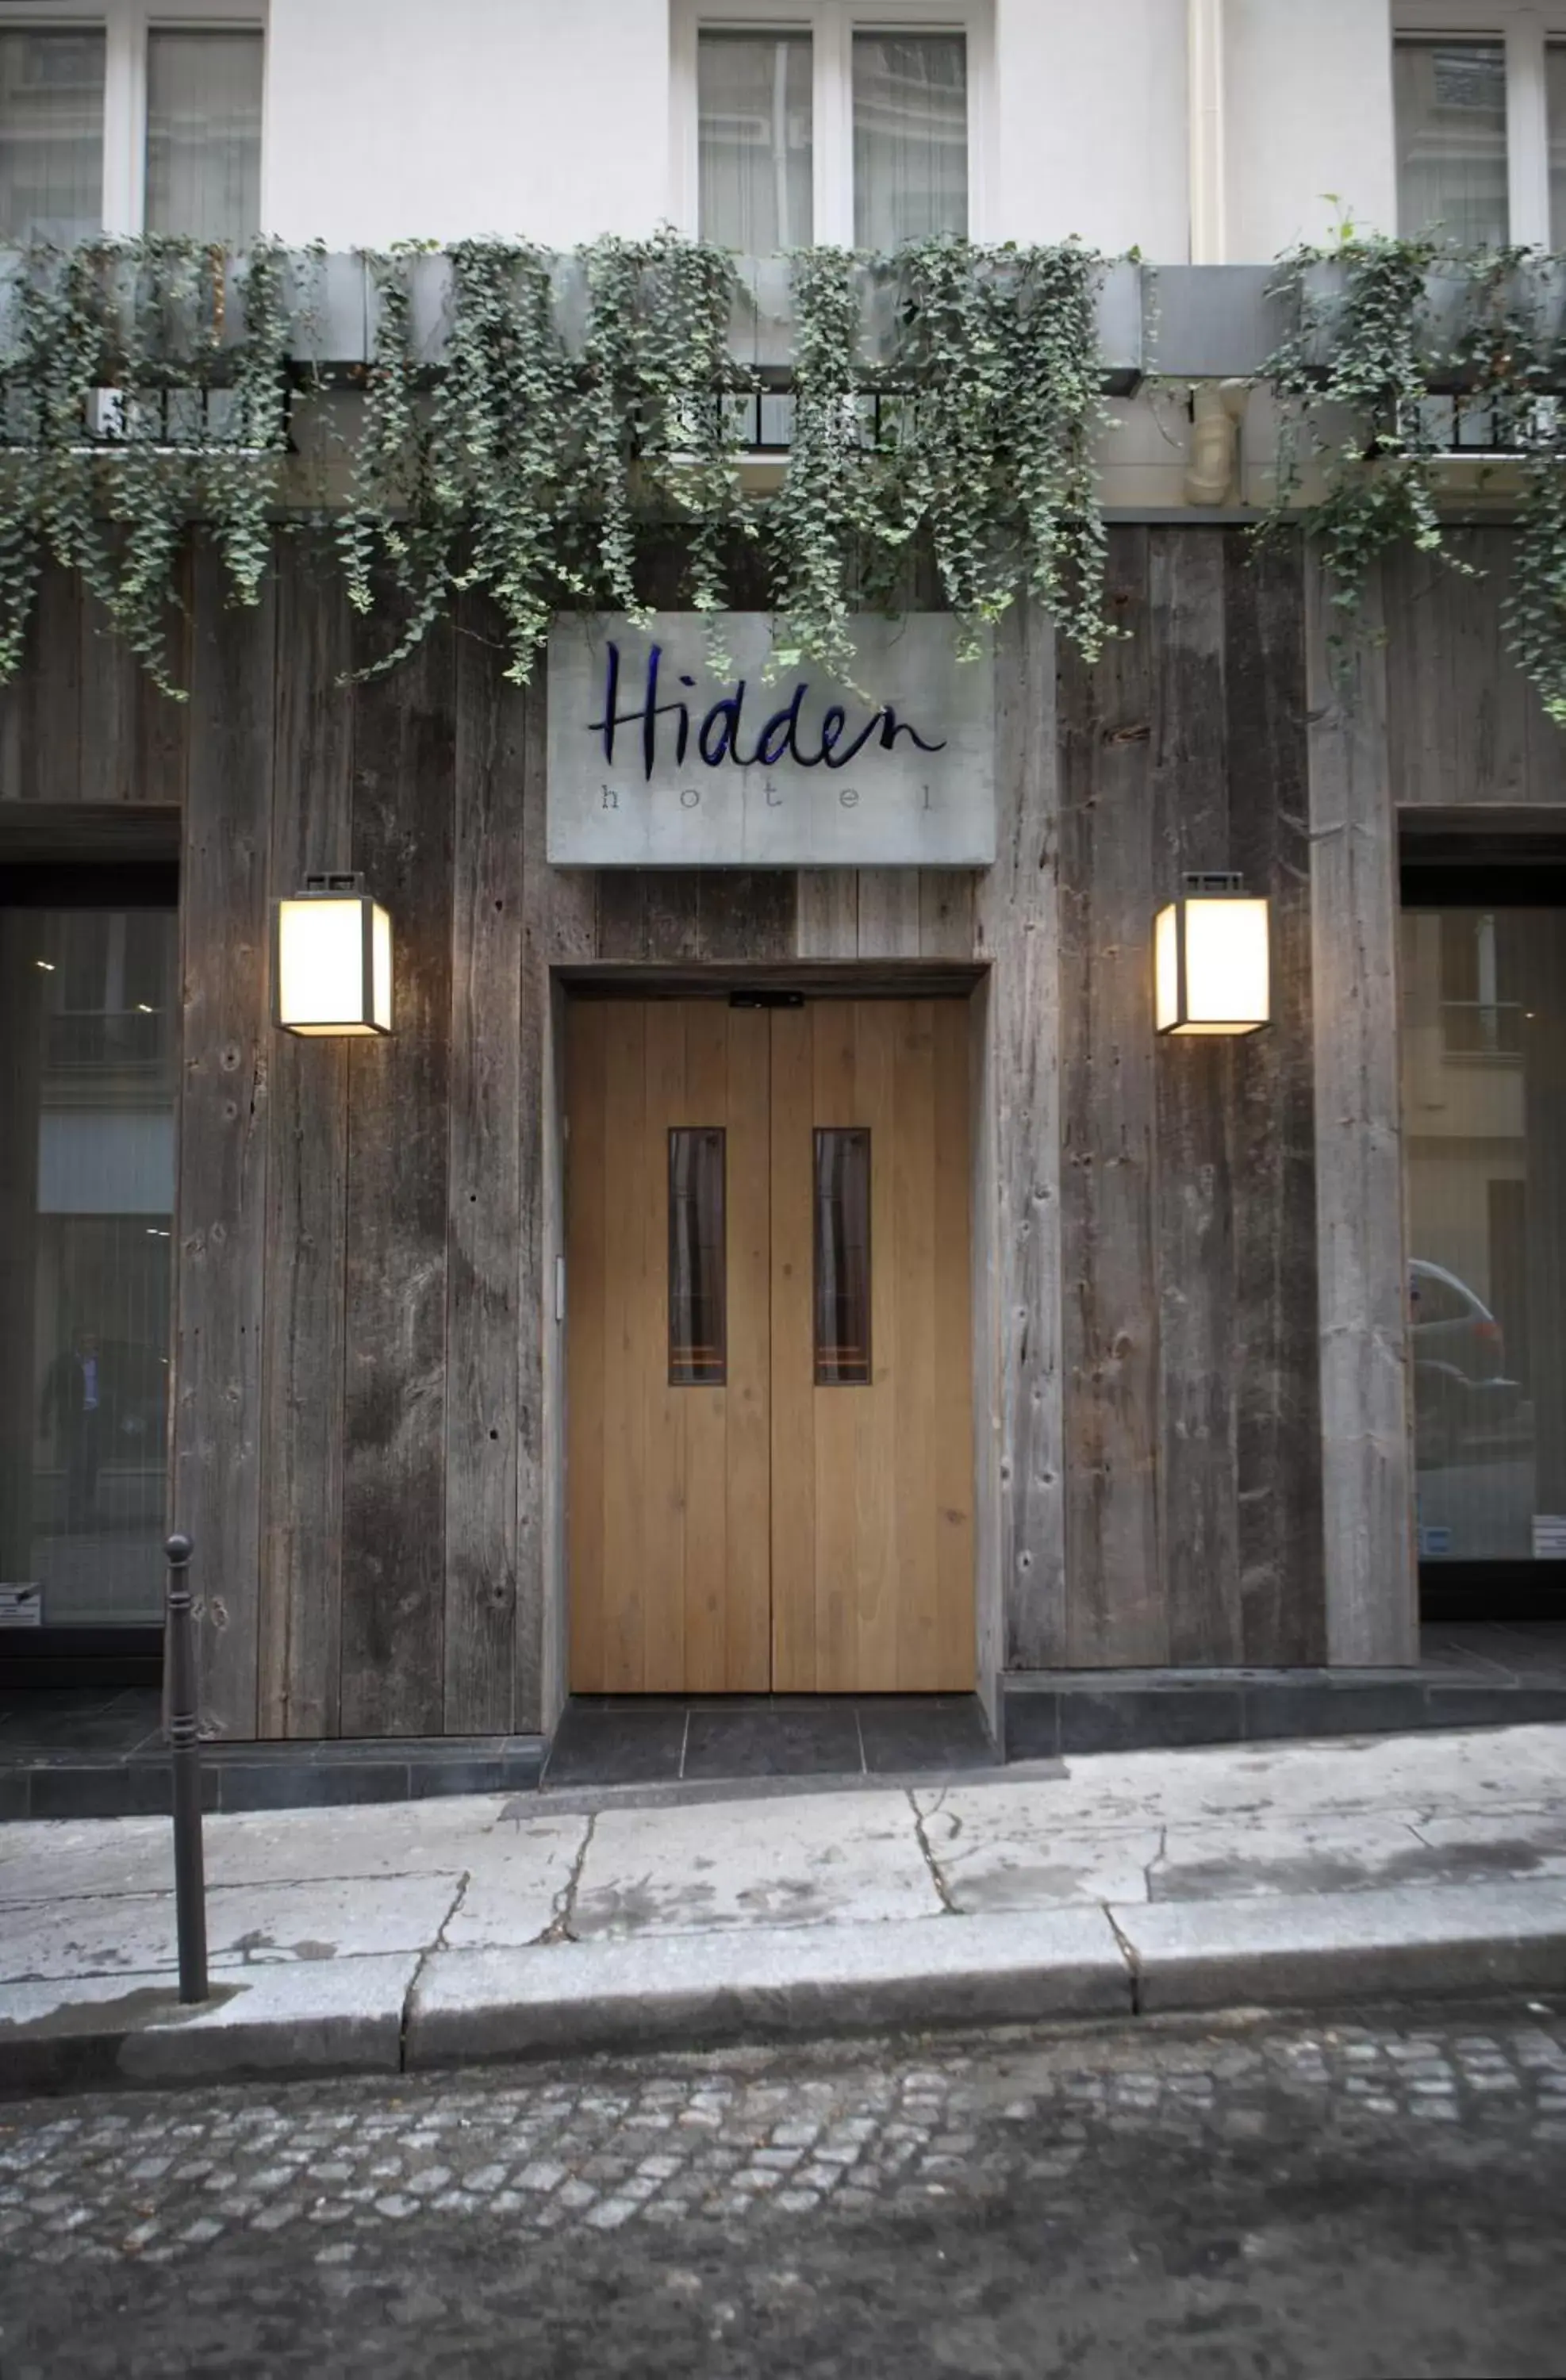 Facade/entrance in Hidden Hotel